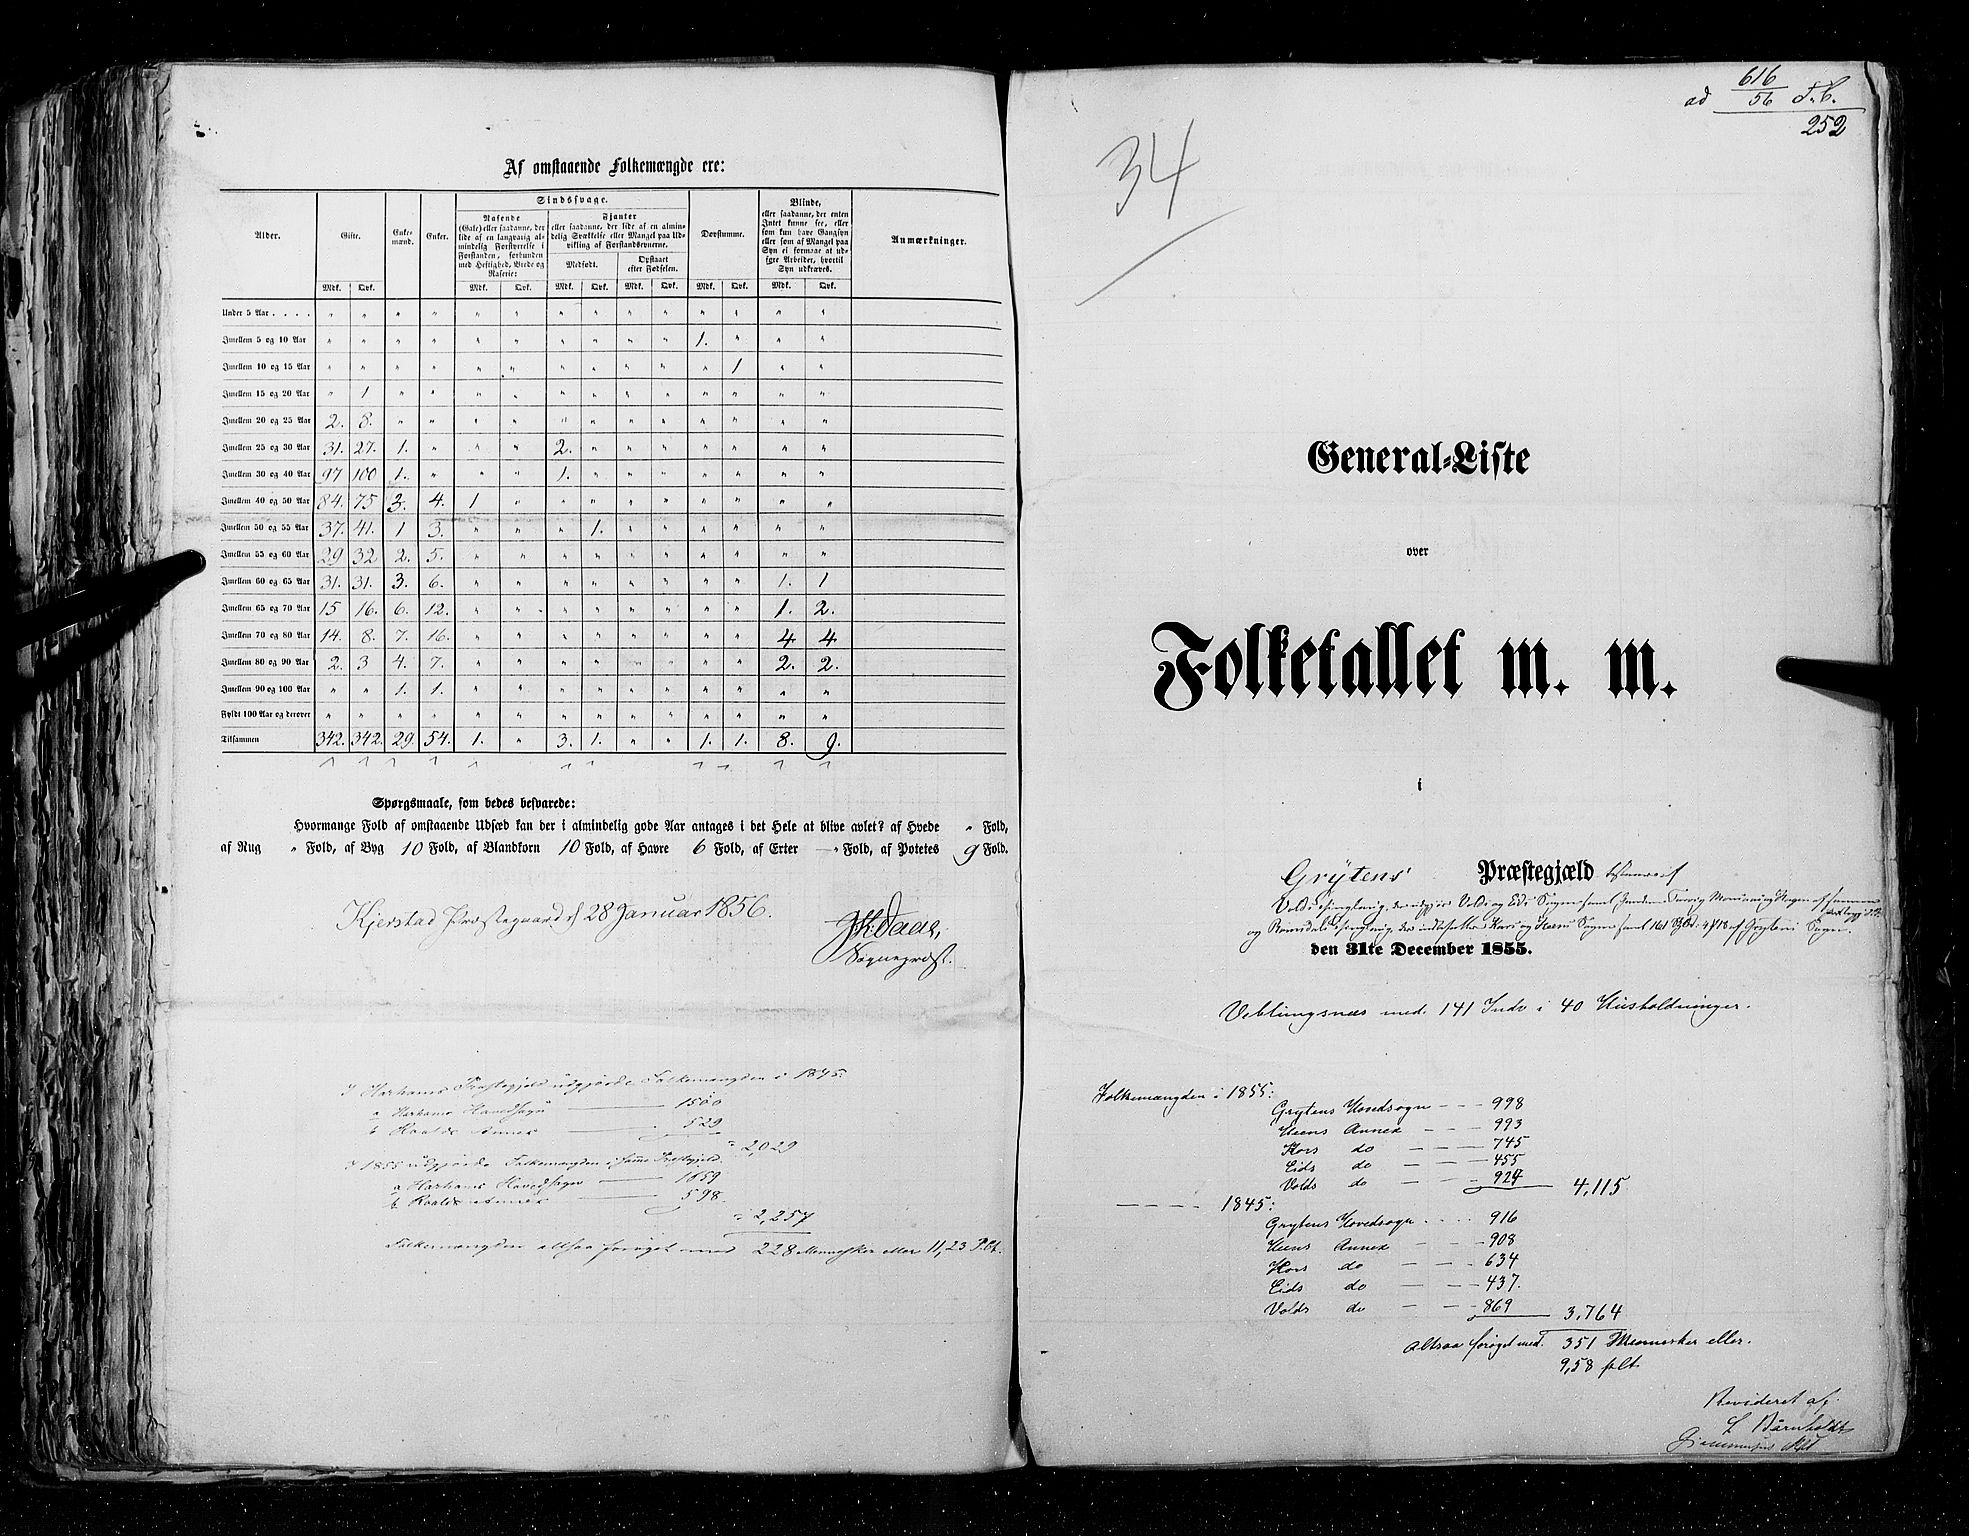 RA, Folketellingen 1855, bind 5: Nordre Bergenhus amt, Romsdal amt og Søndre Trondhjem amt, 1855, s. 252